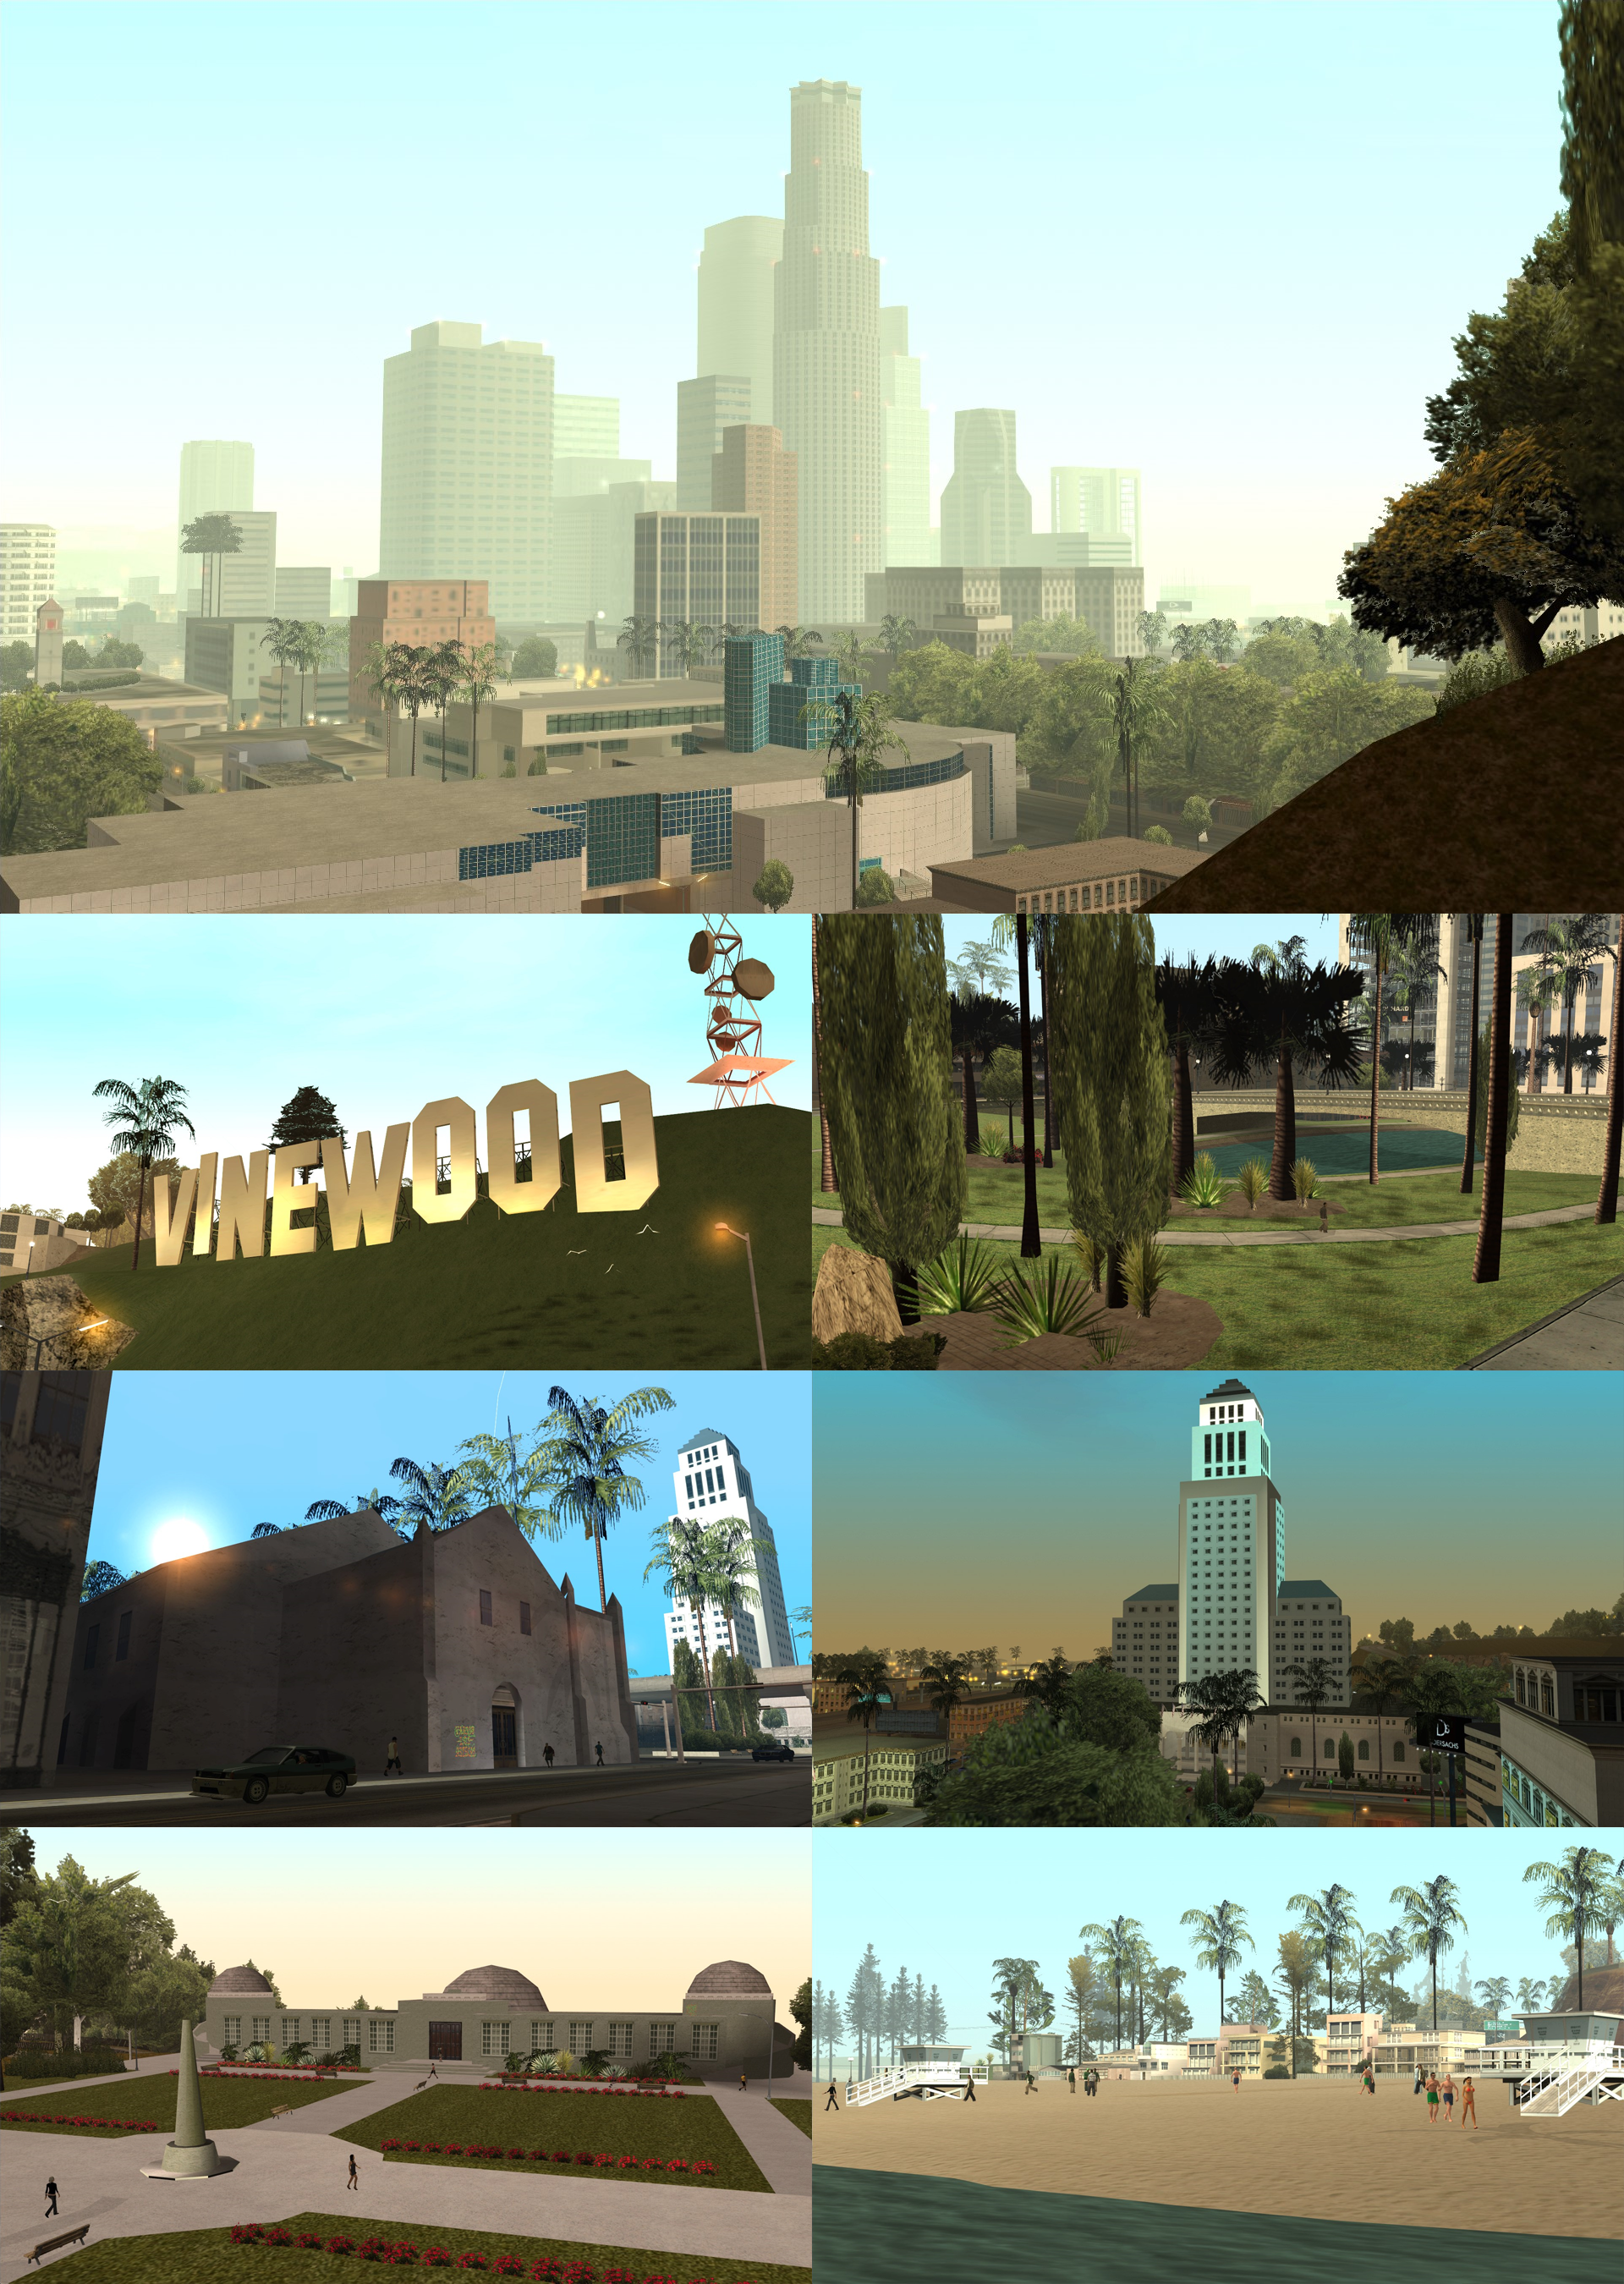 GTA 5 LOS SANTOS PLACES VS REAL LIFE LOS ANGELES PLACES (VERY